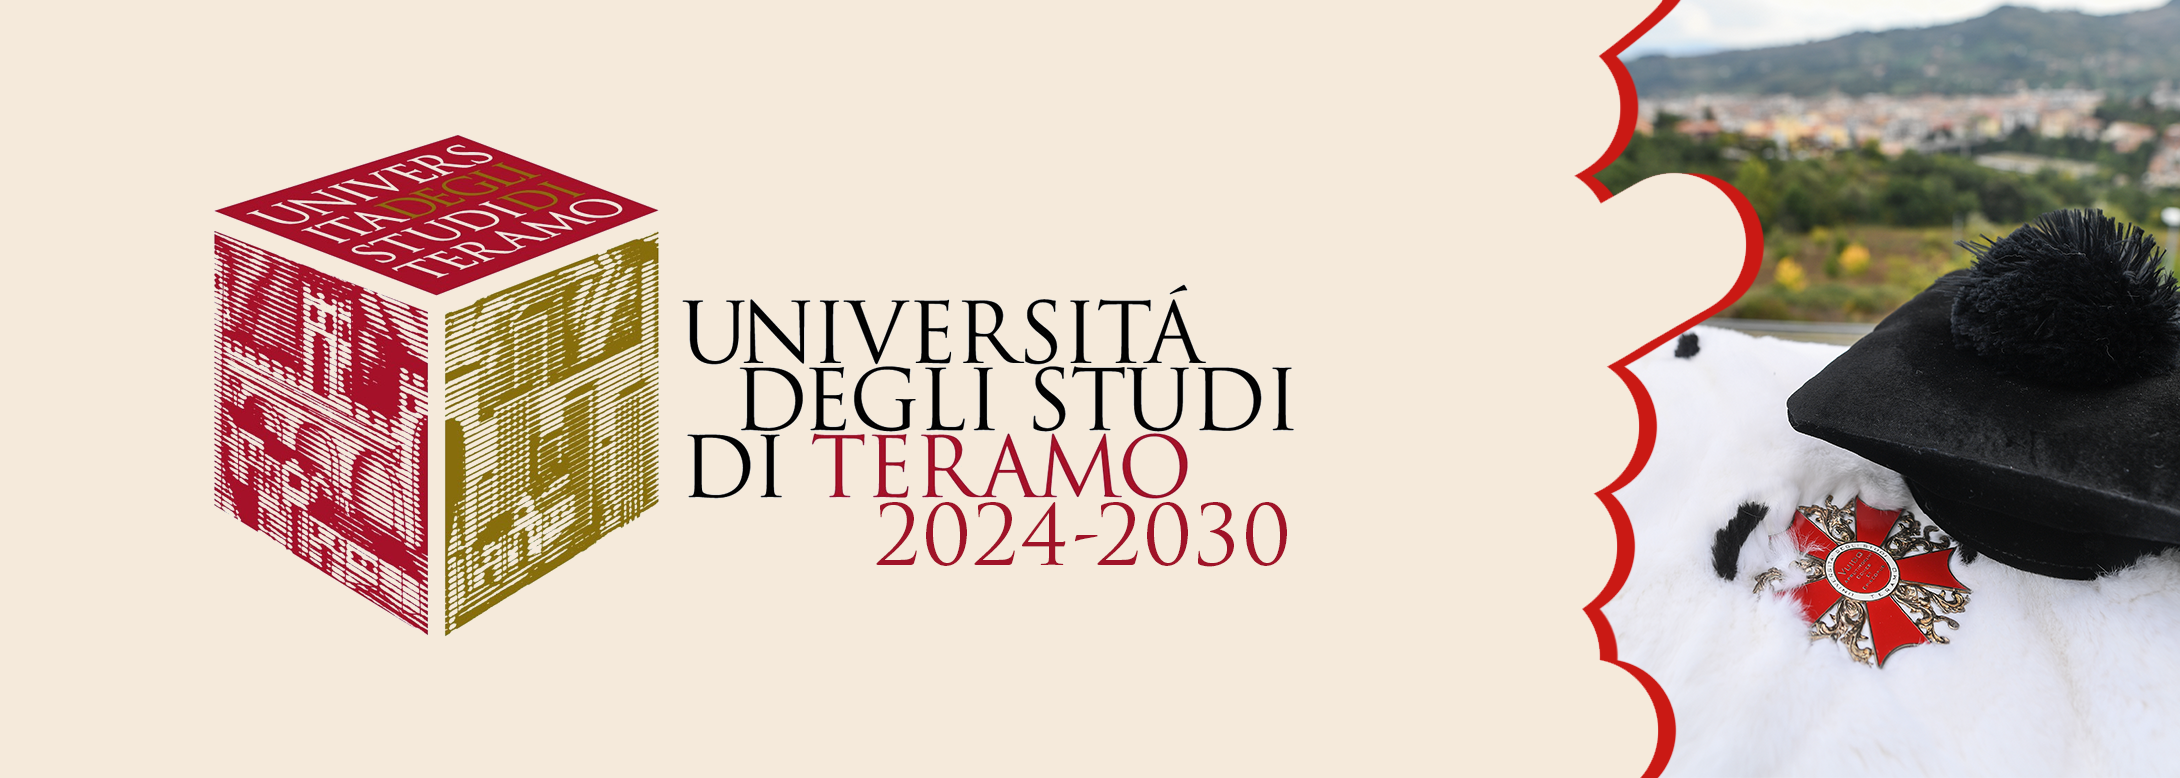 Presentate le candidature per le elezioni del Rettore dell'Università degli Studi di Teramo